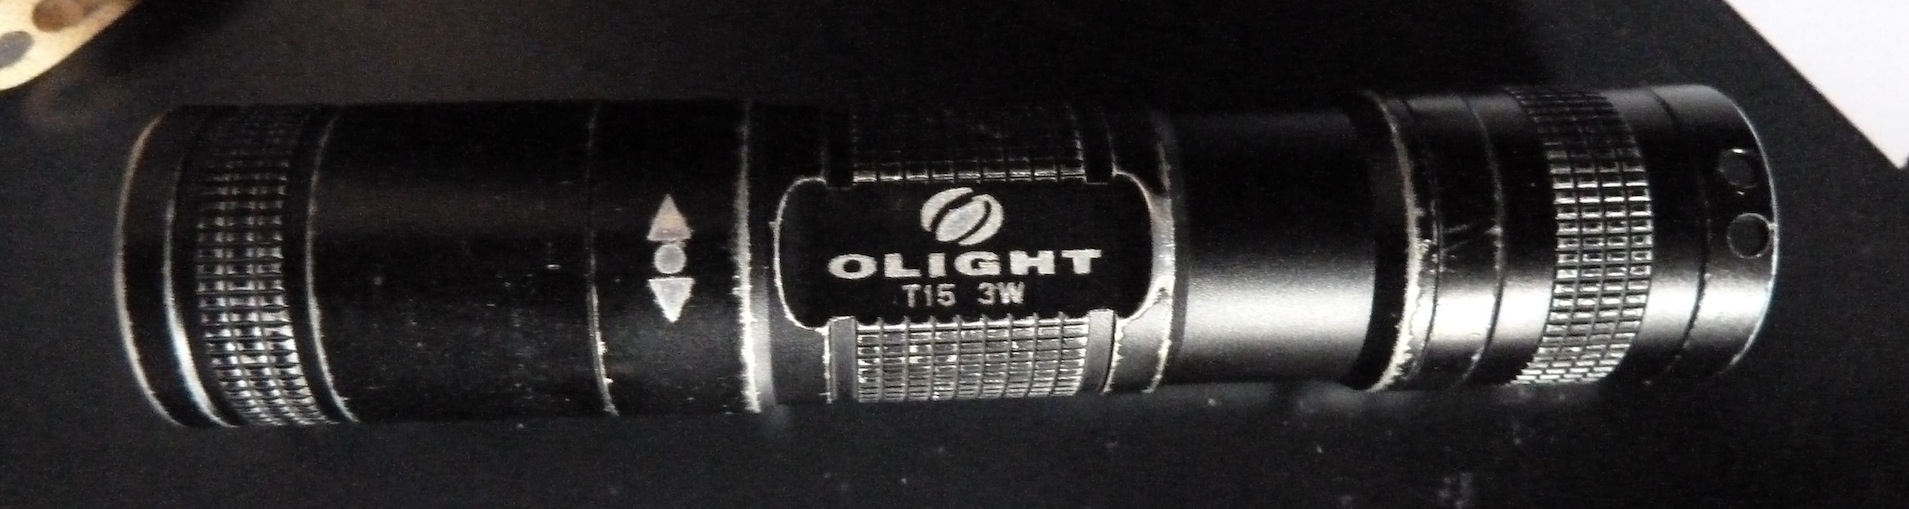 OlightFlashlight.jpg